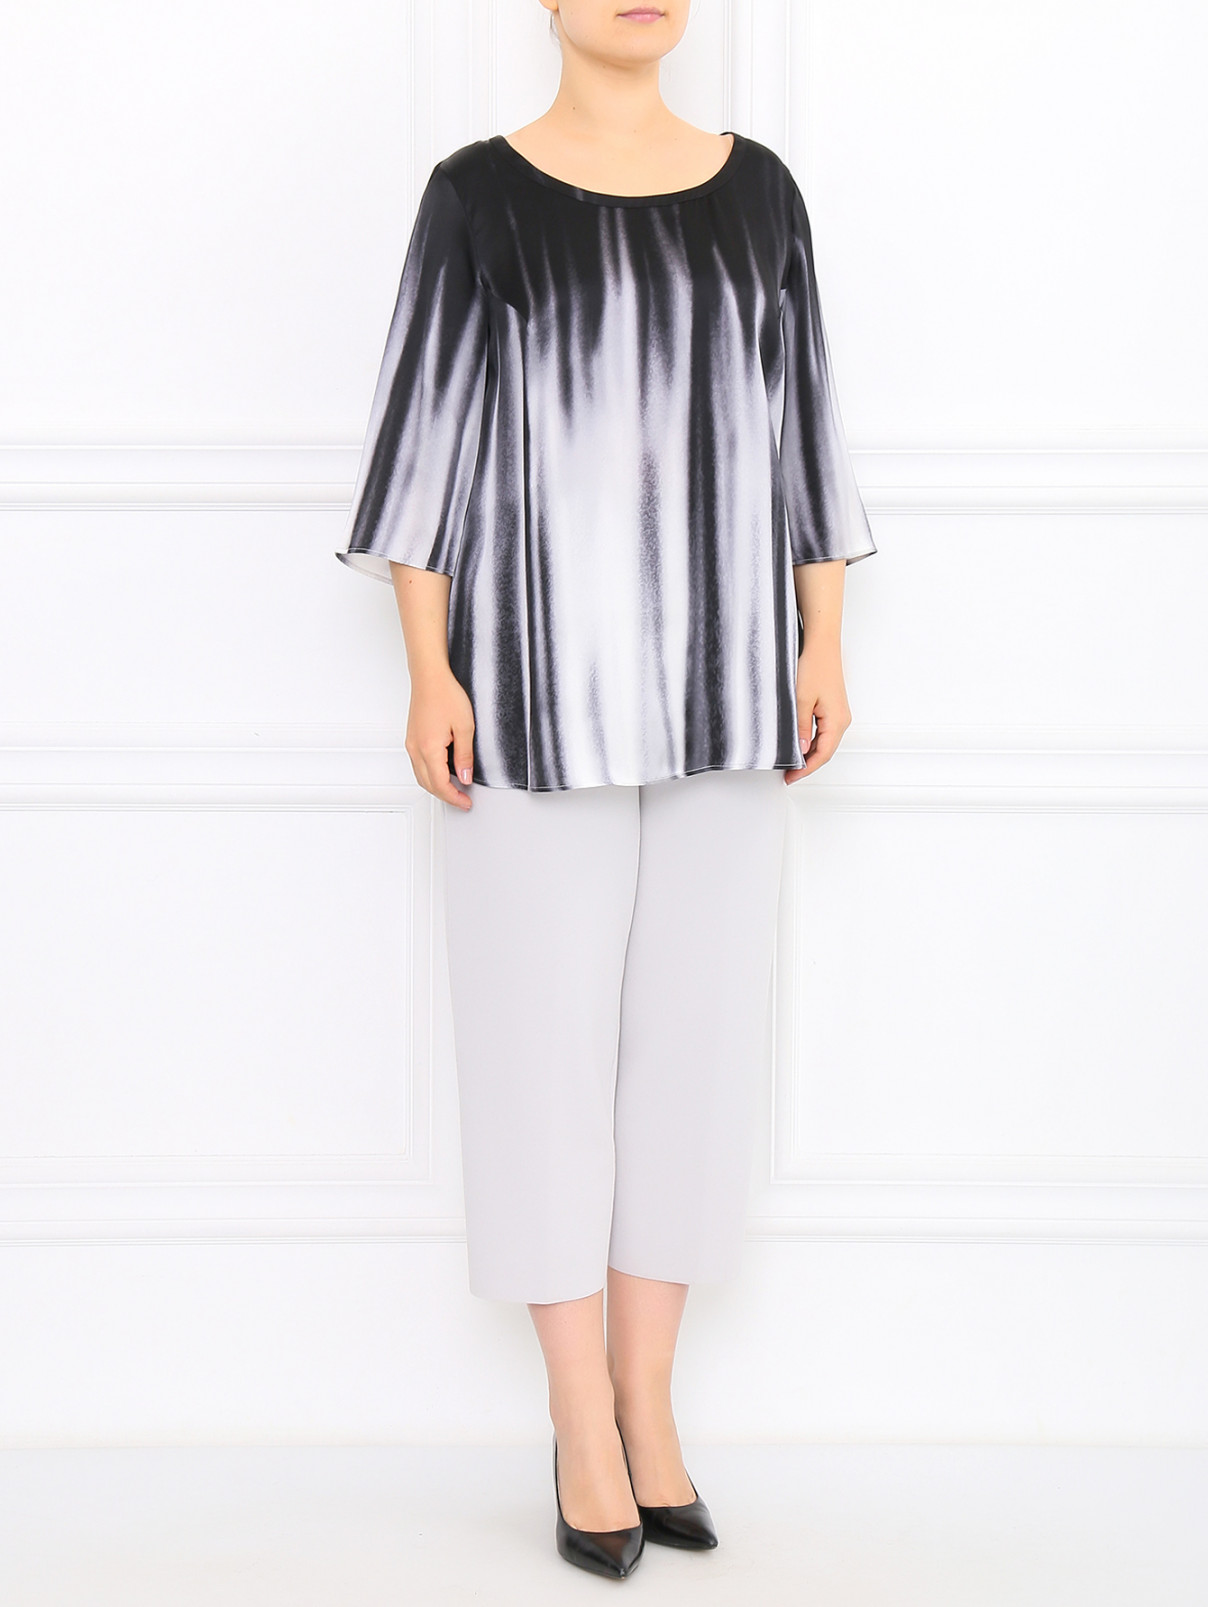 Блуза из шелка с узором Marina Rinaldi  –  Модель Общий вид  – Цвет:  Черный